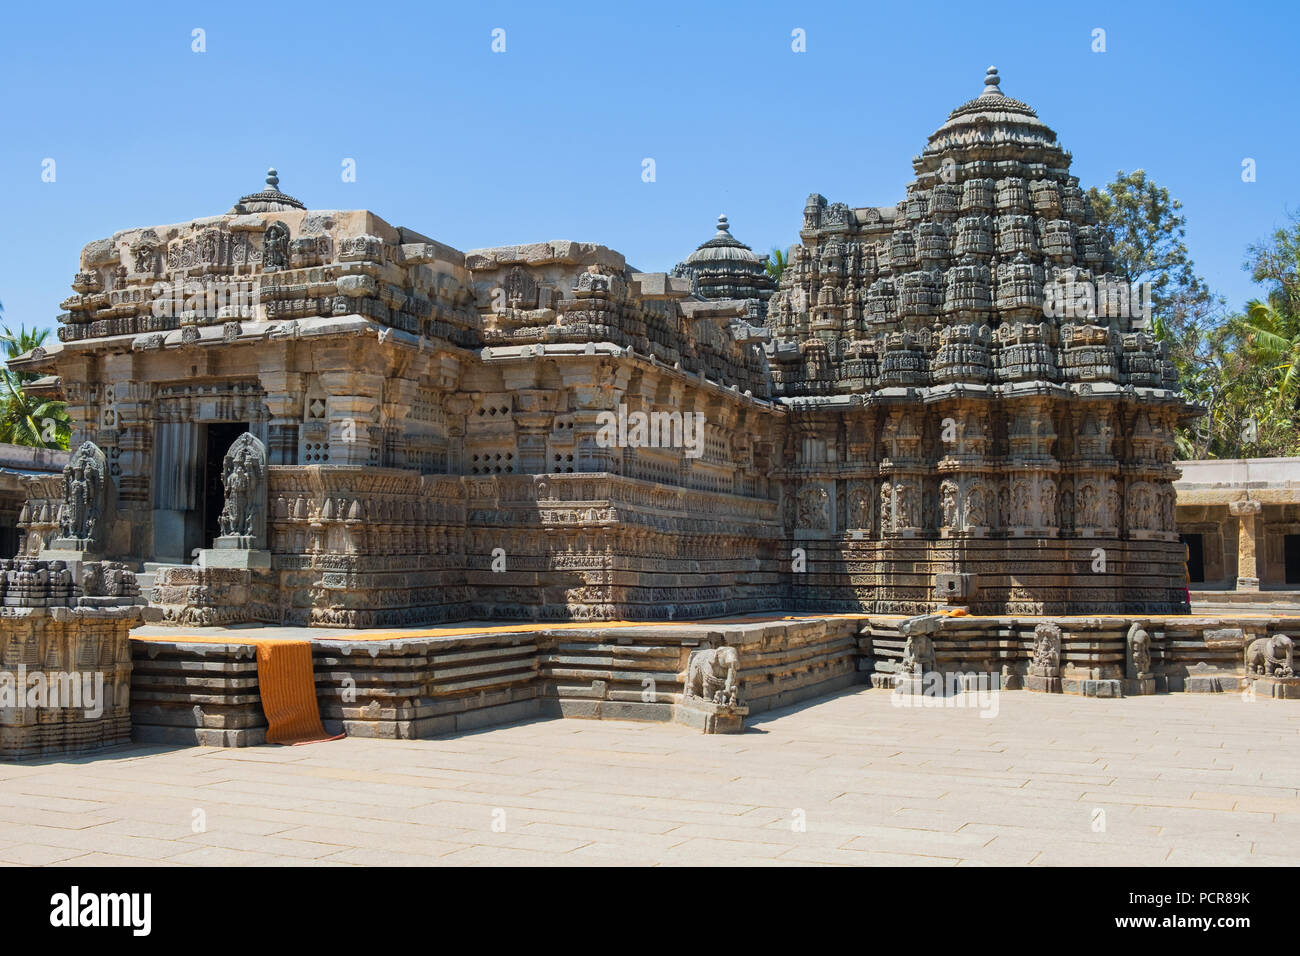 Das 13. Jahrhundert Prasanna Channakeshava oder Hoysalakesava, Tempel von Somnathpur in Karnataka, Indien, für seine Schnitzereien bekannt. Stockfoto